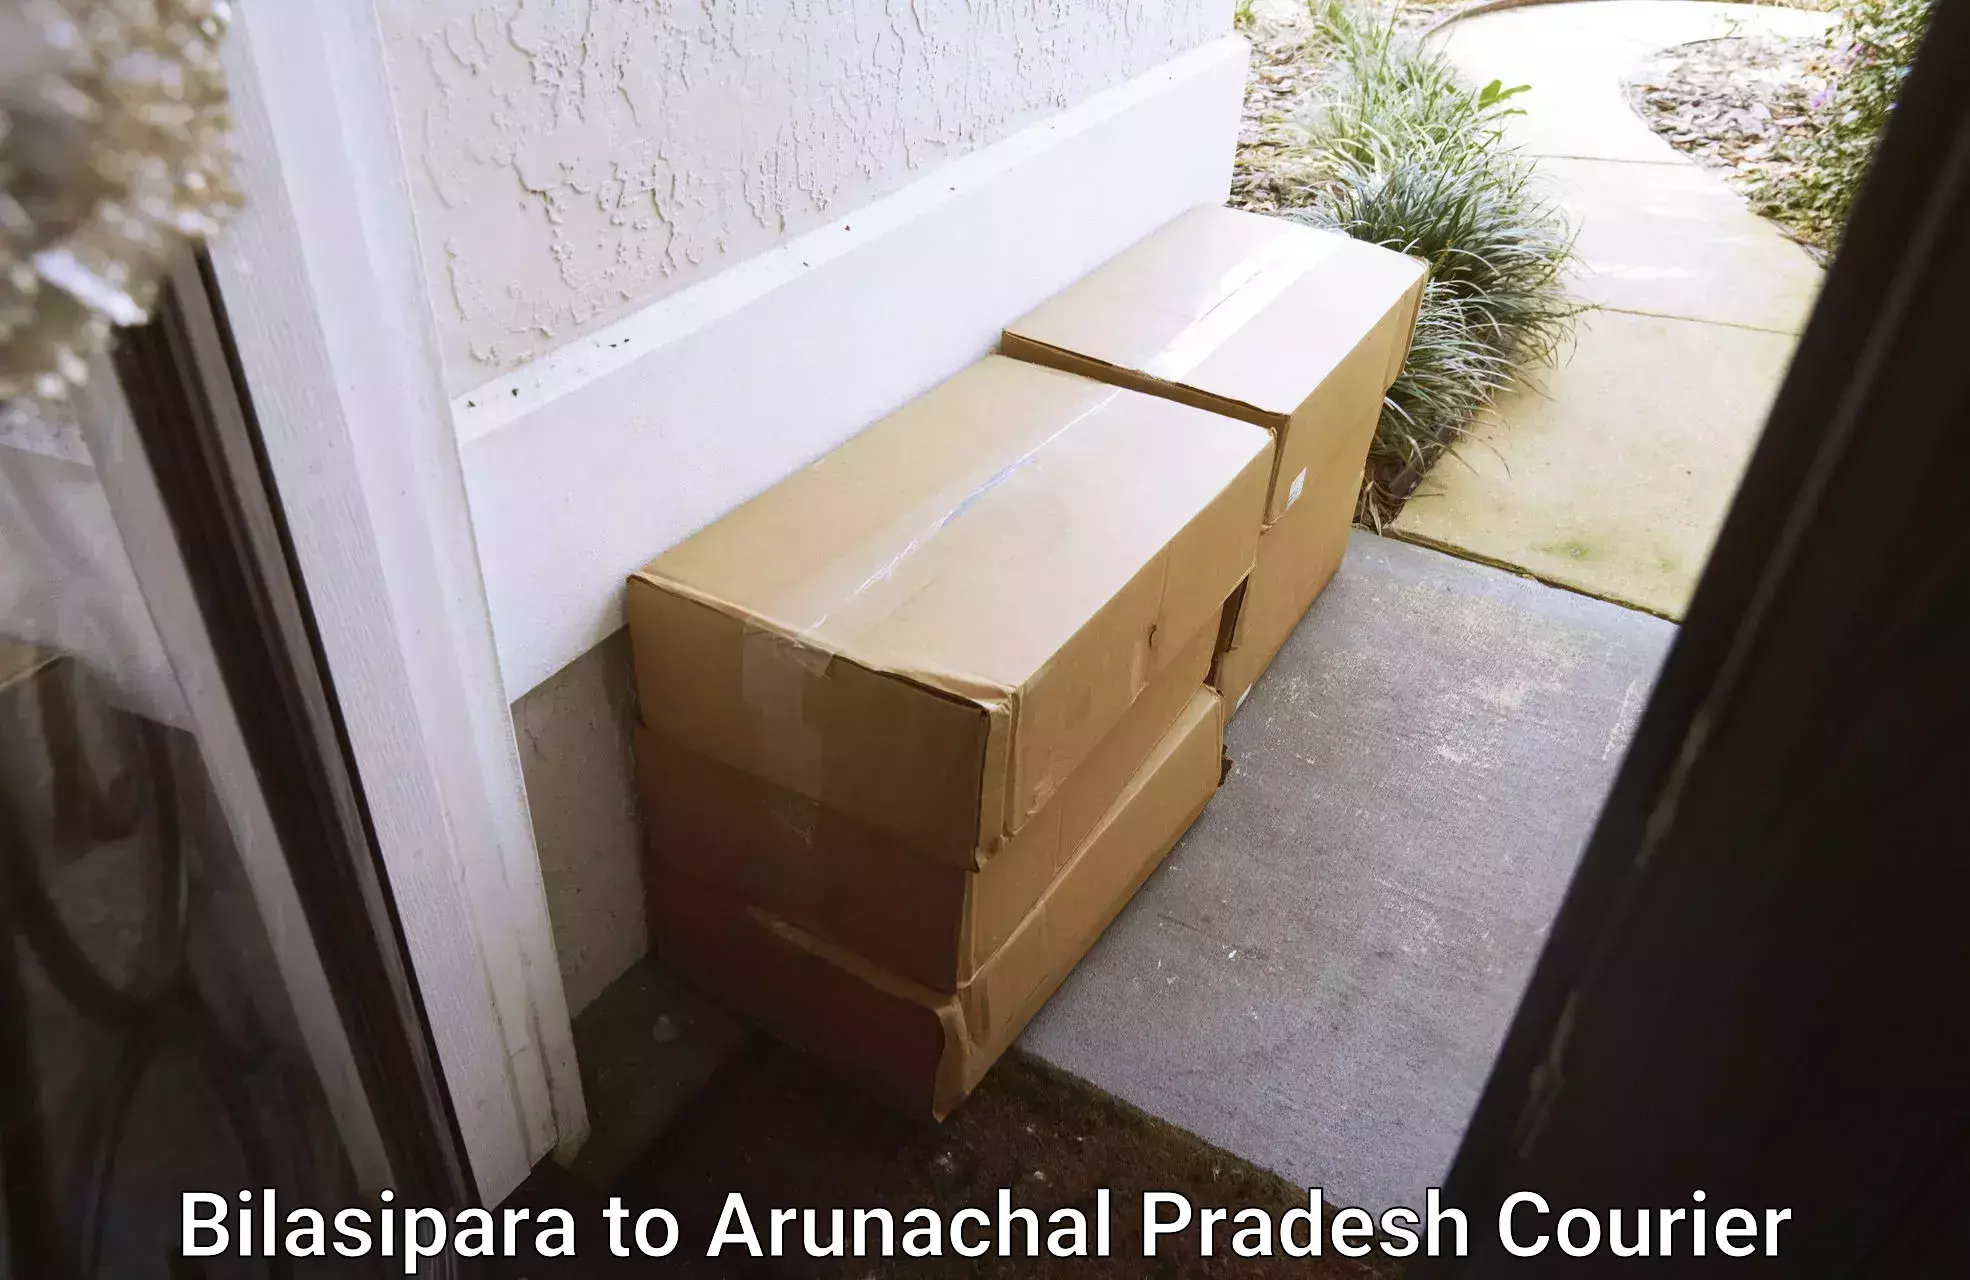 Professional courier services in Bilasipara to Arunachal Pradesh